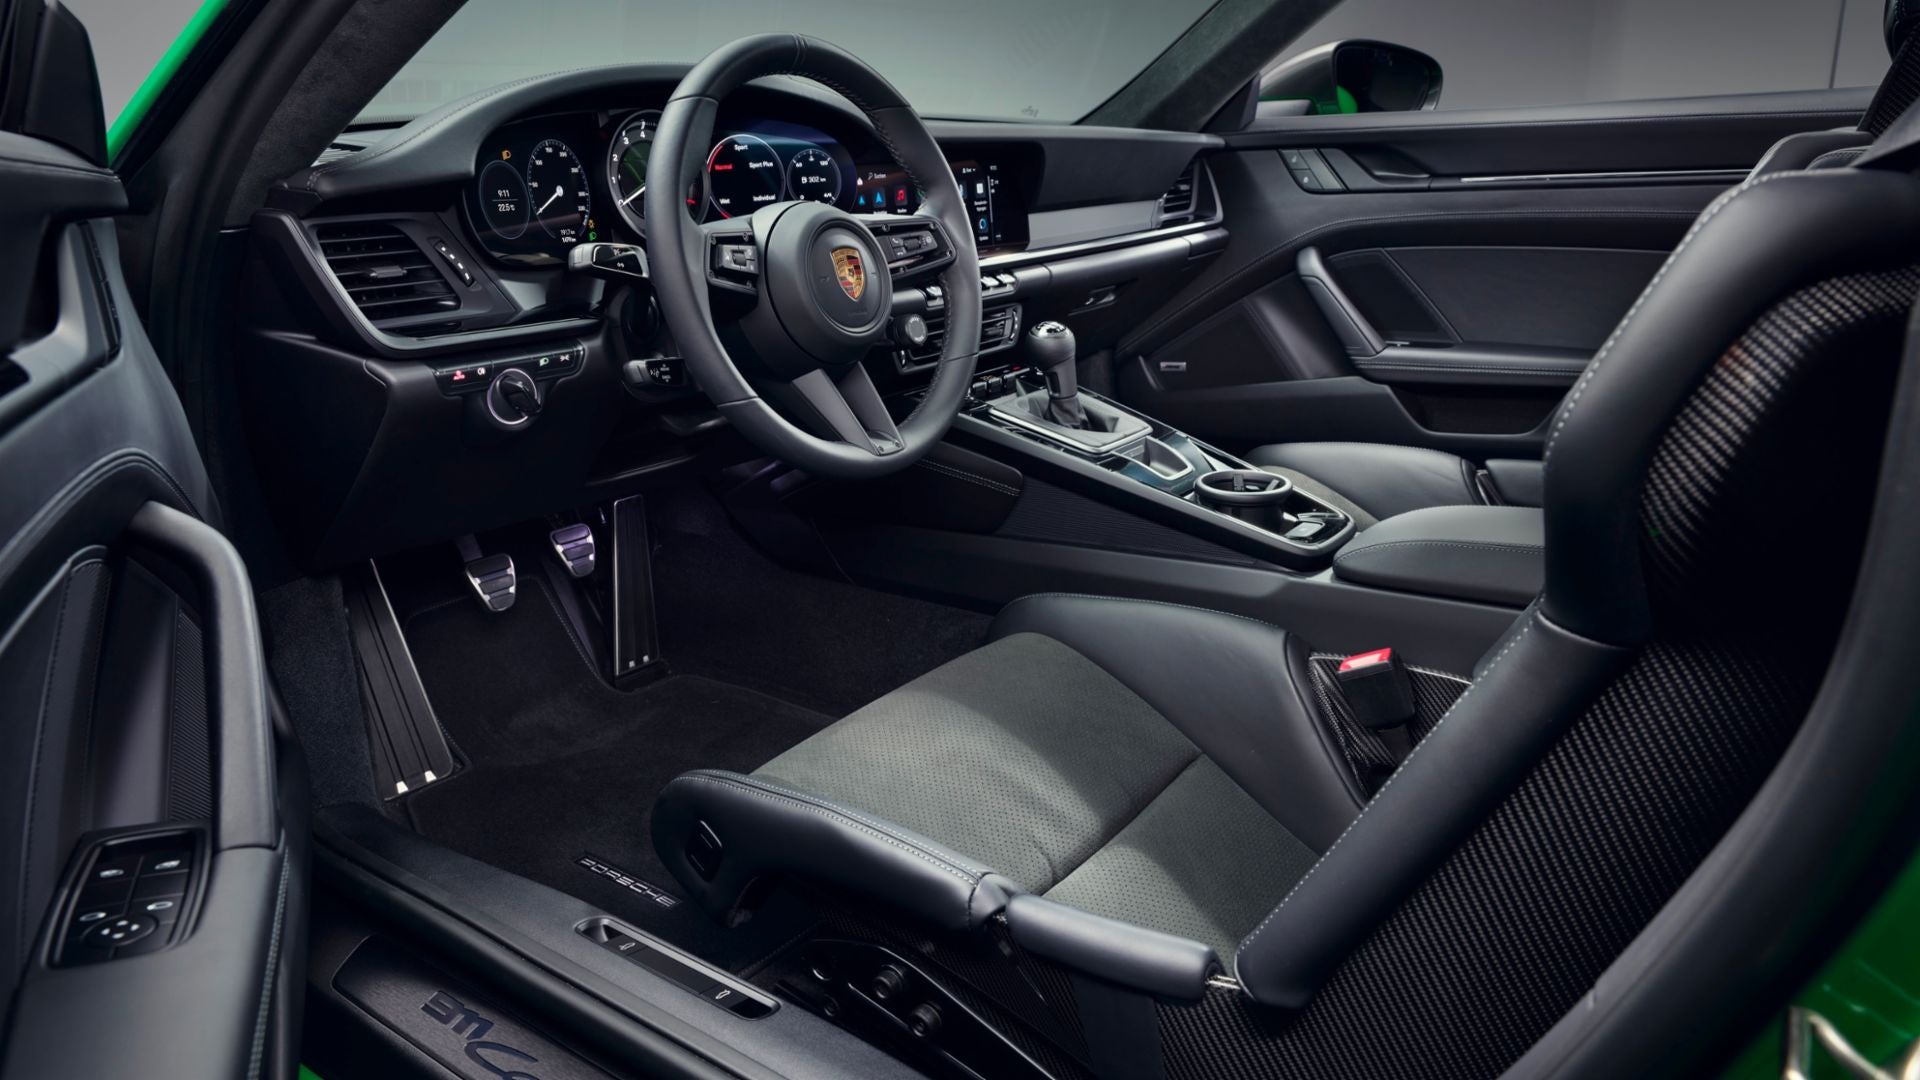 2023 Porsche 911 Dakar interior and technology San Francisco CA